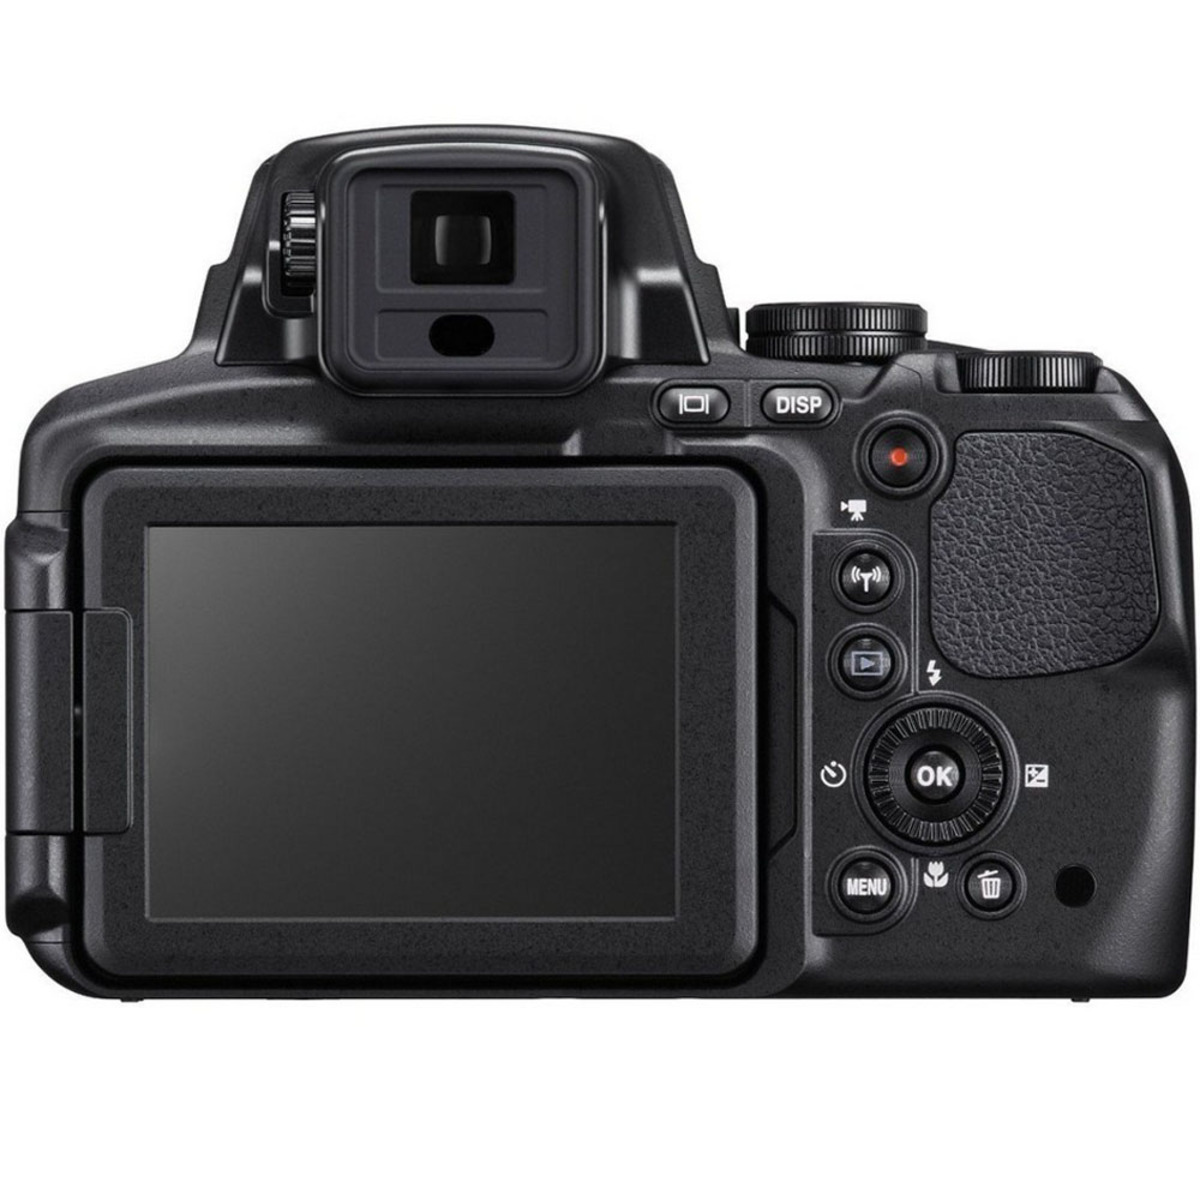 Nikon Digital Camera CoolPix P900 16.0MP Black